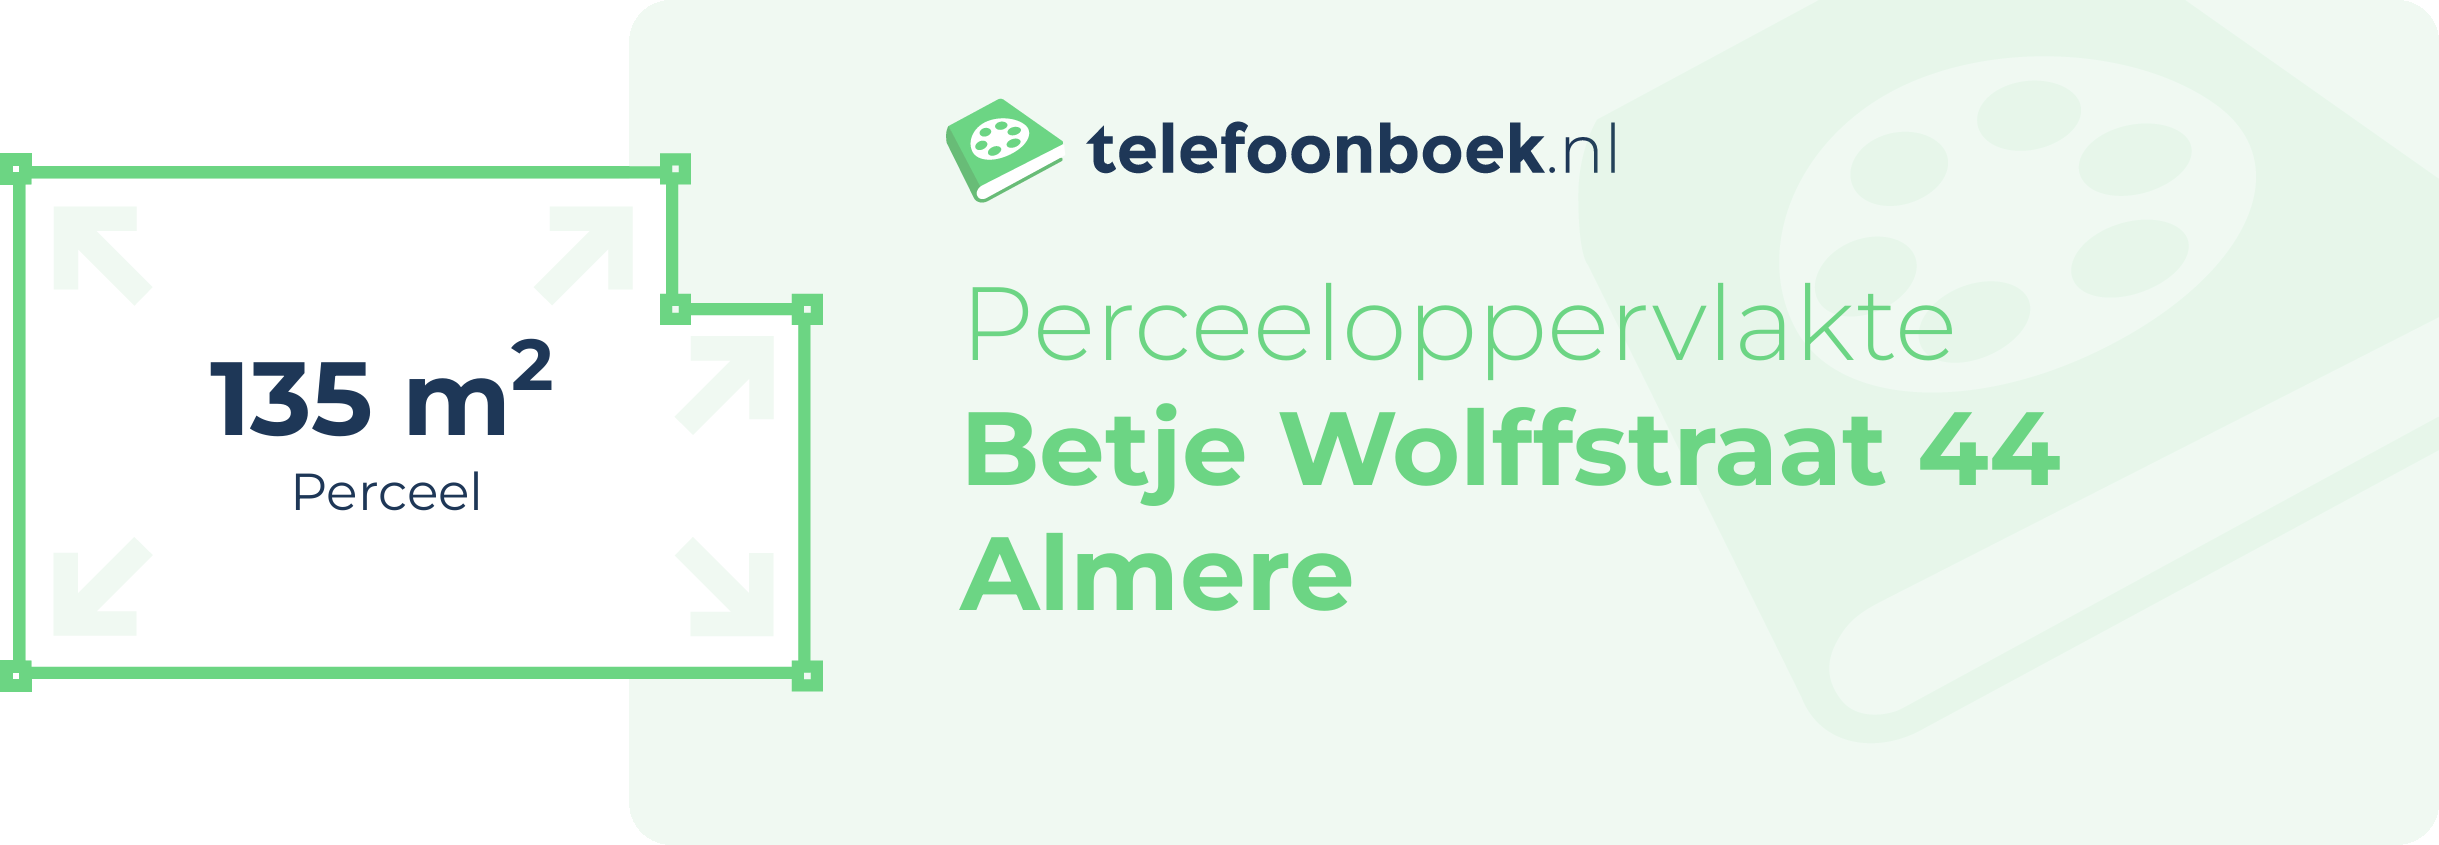 Perceeloppervlakte Betje Wolffstraat 44 Almere